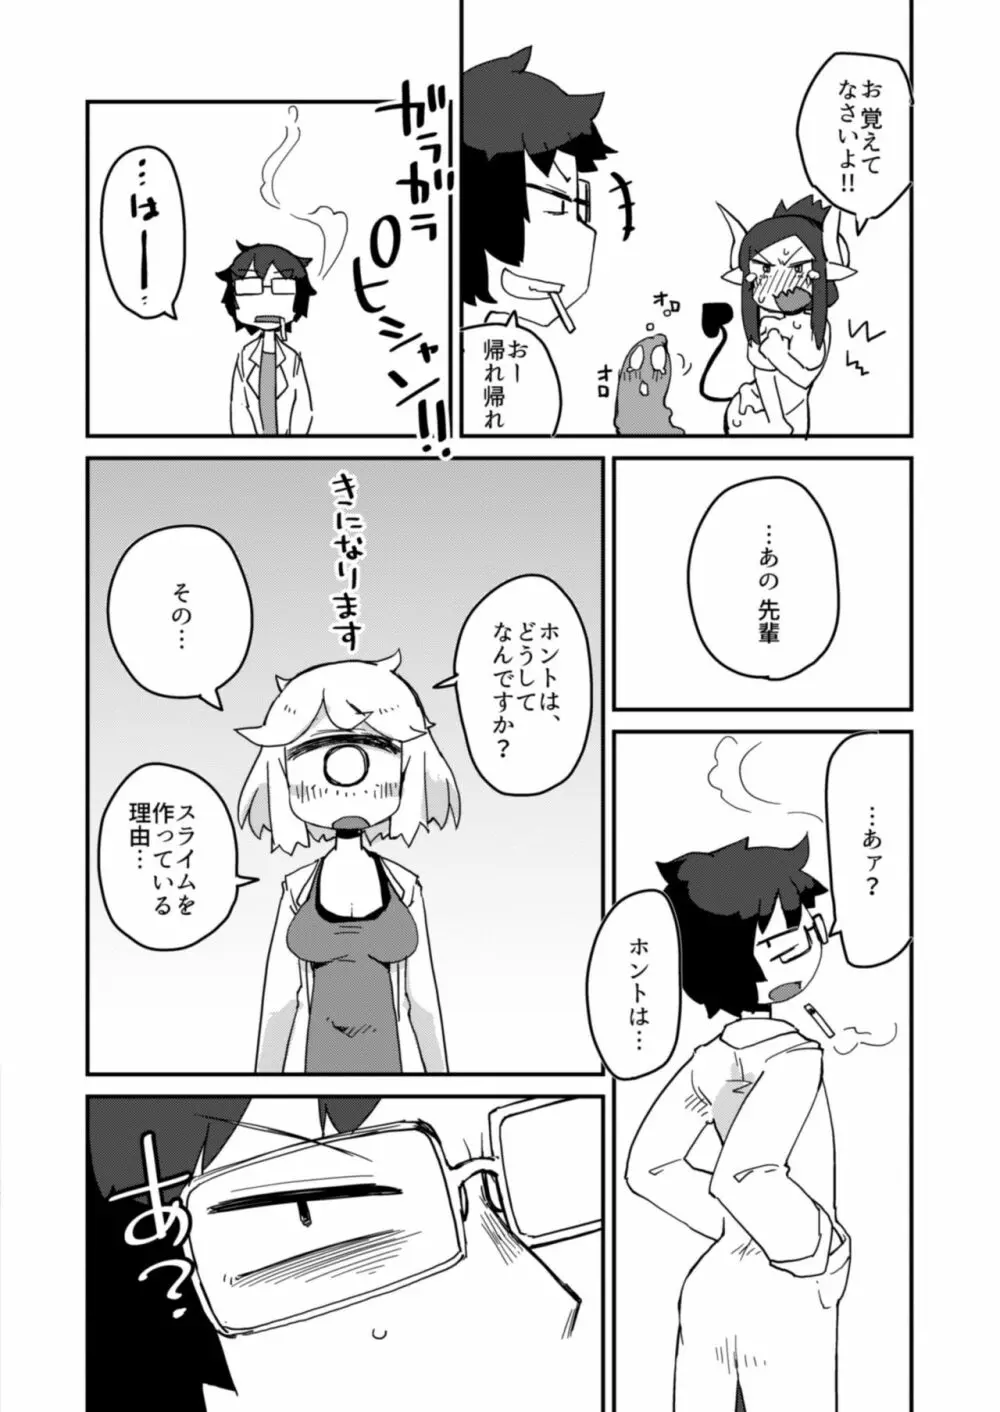 後輩の単眼ちゃん#2 - page15